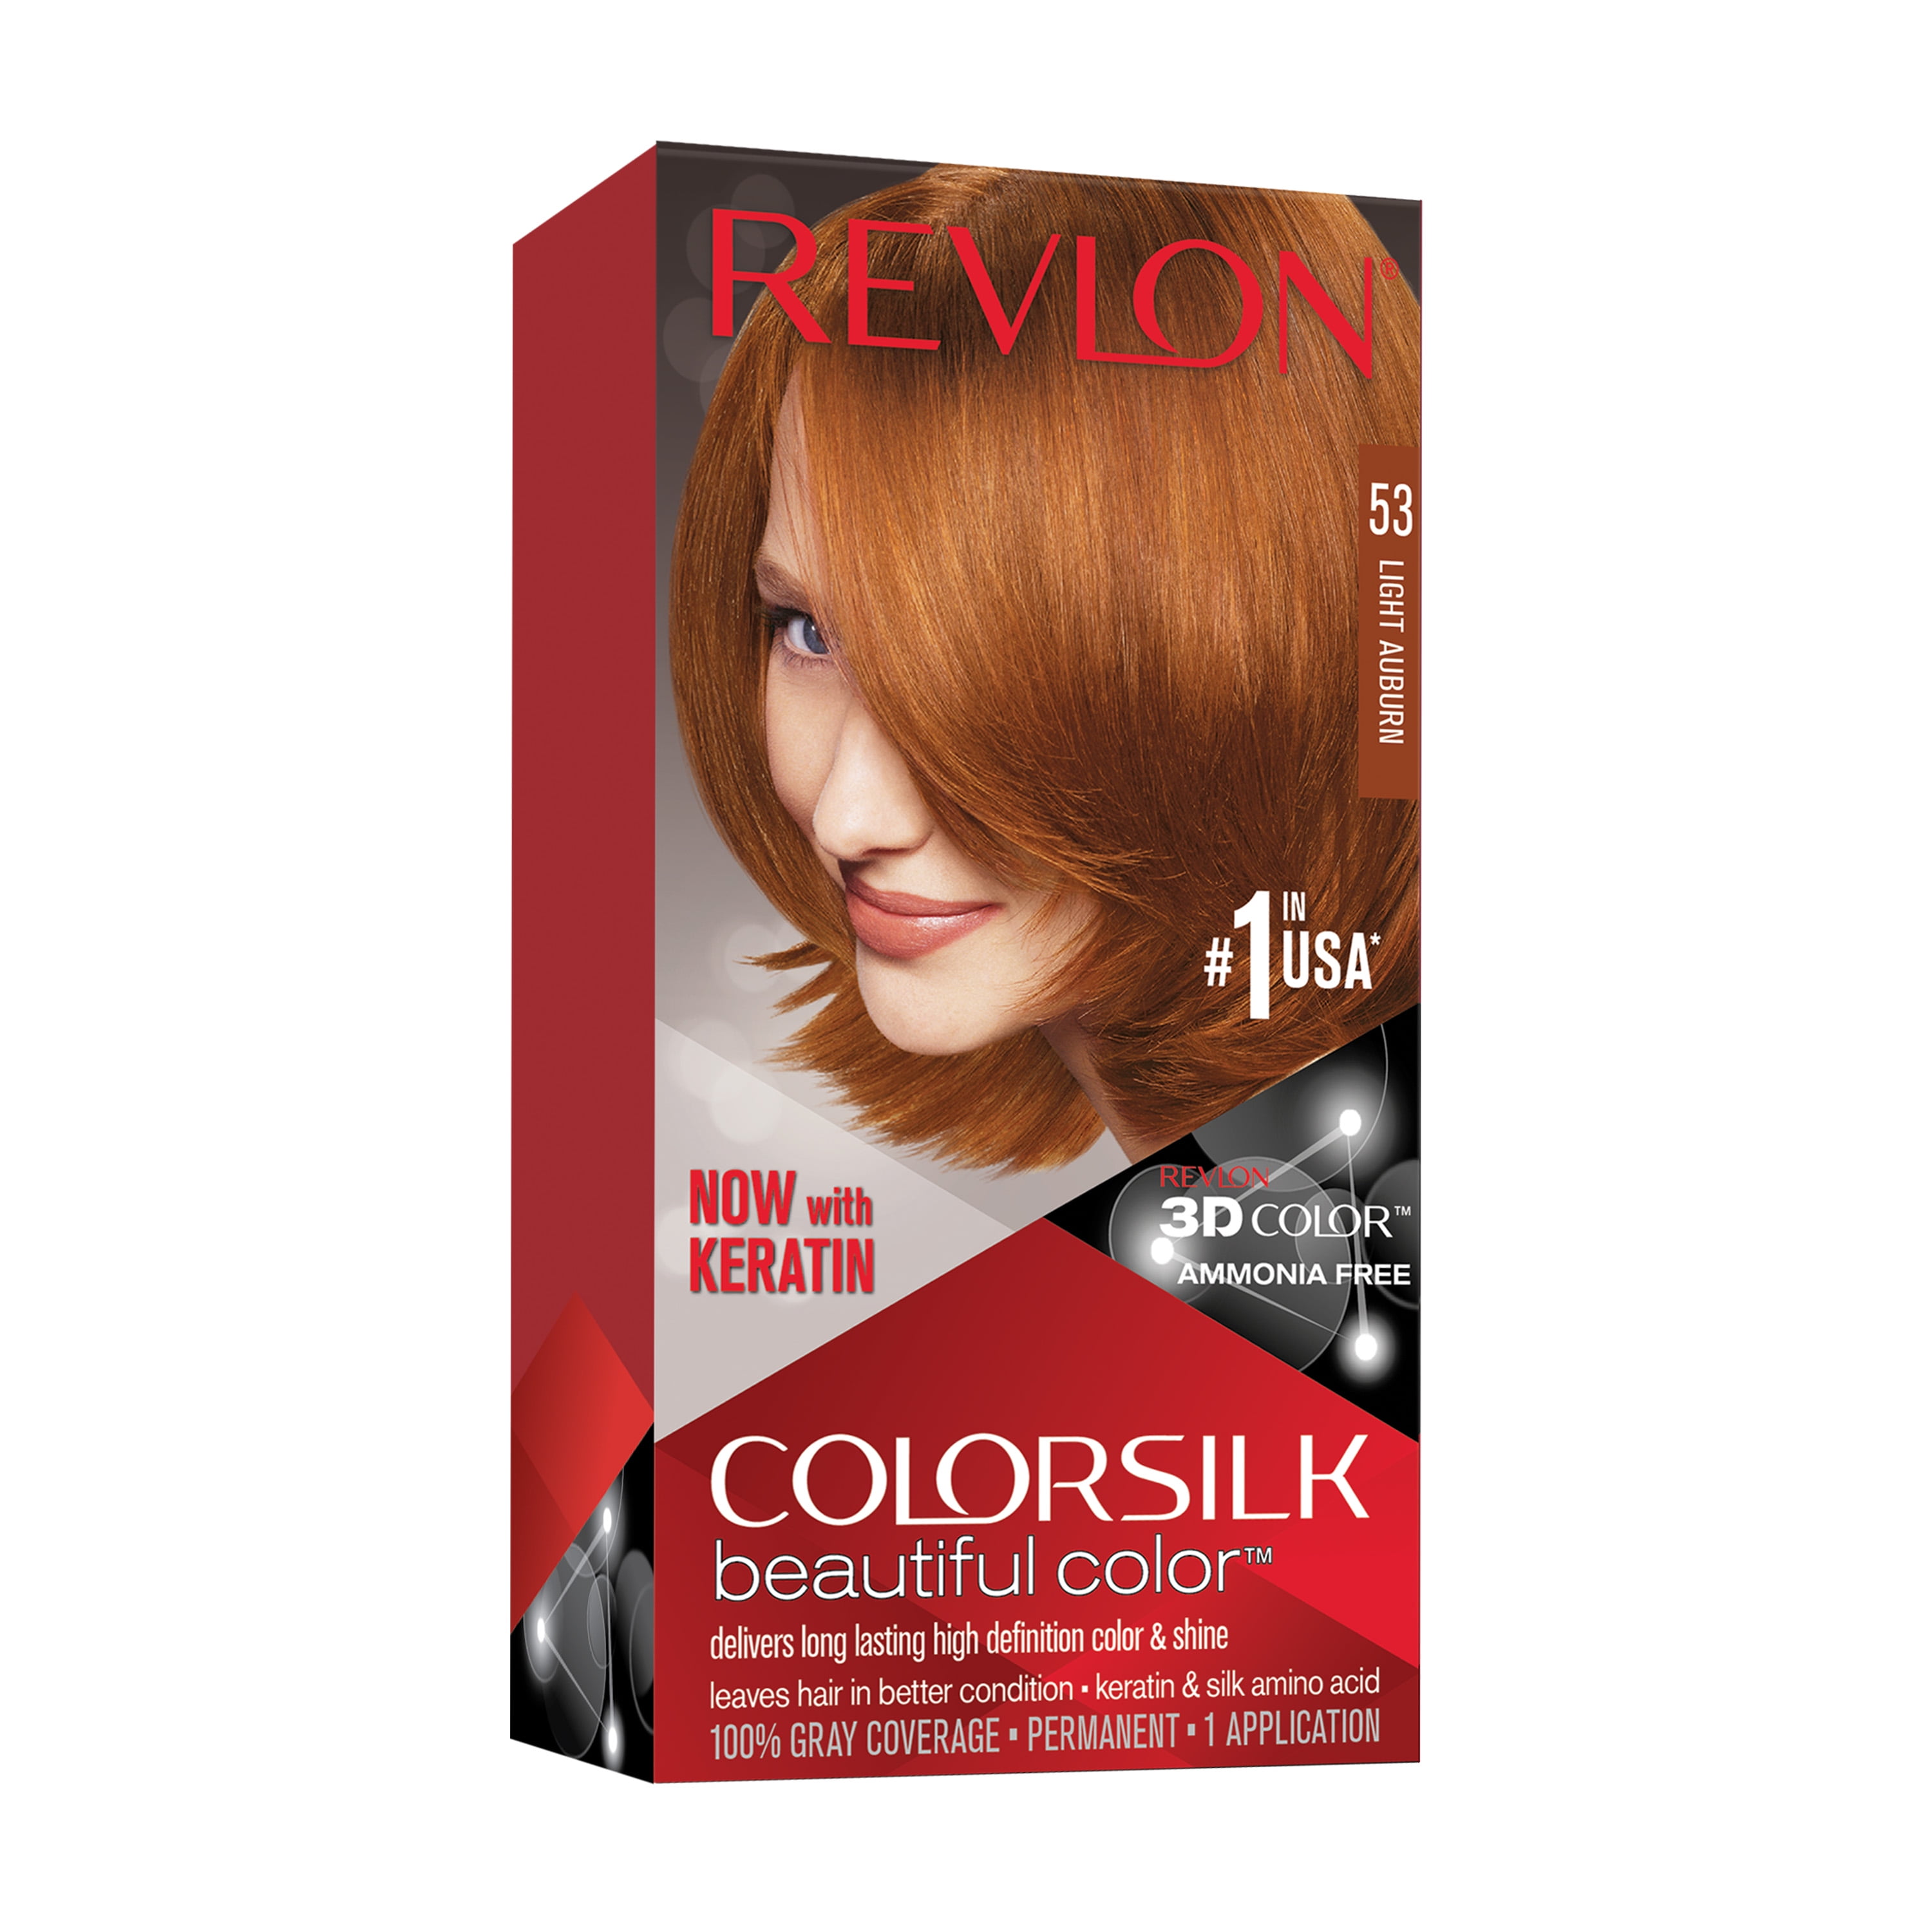 Revlon ColorSilk Beautiful Color Permanent Hair Color, 53 Light Auburn, 1  count - Walmart.com